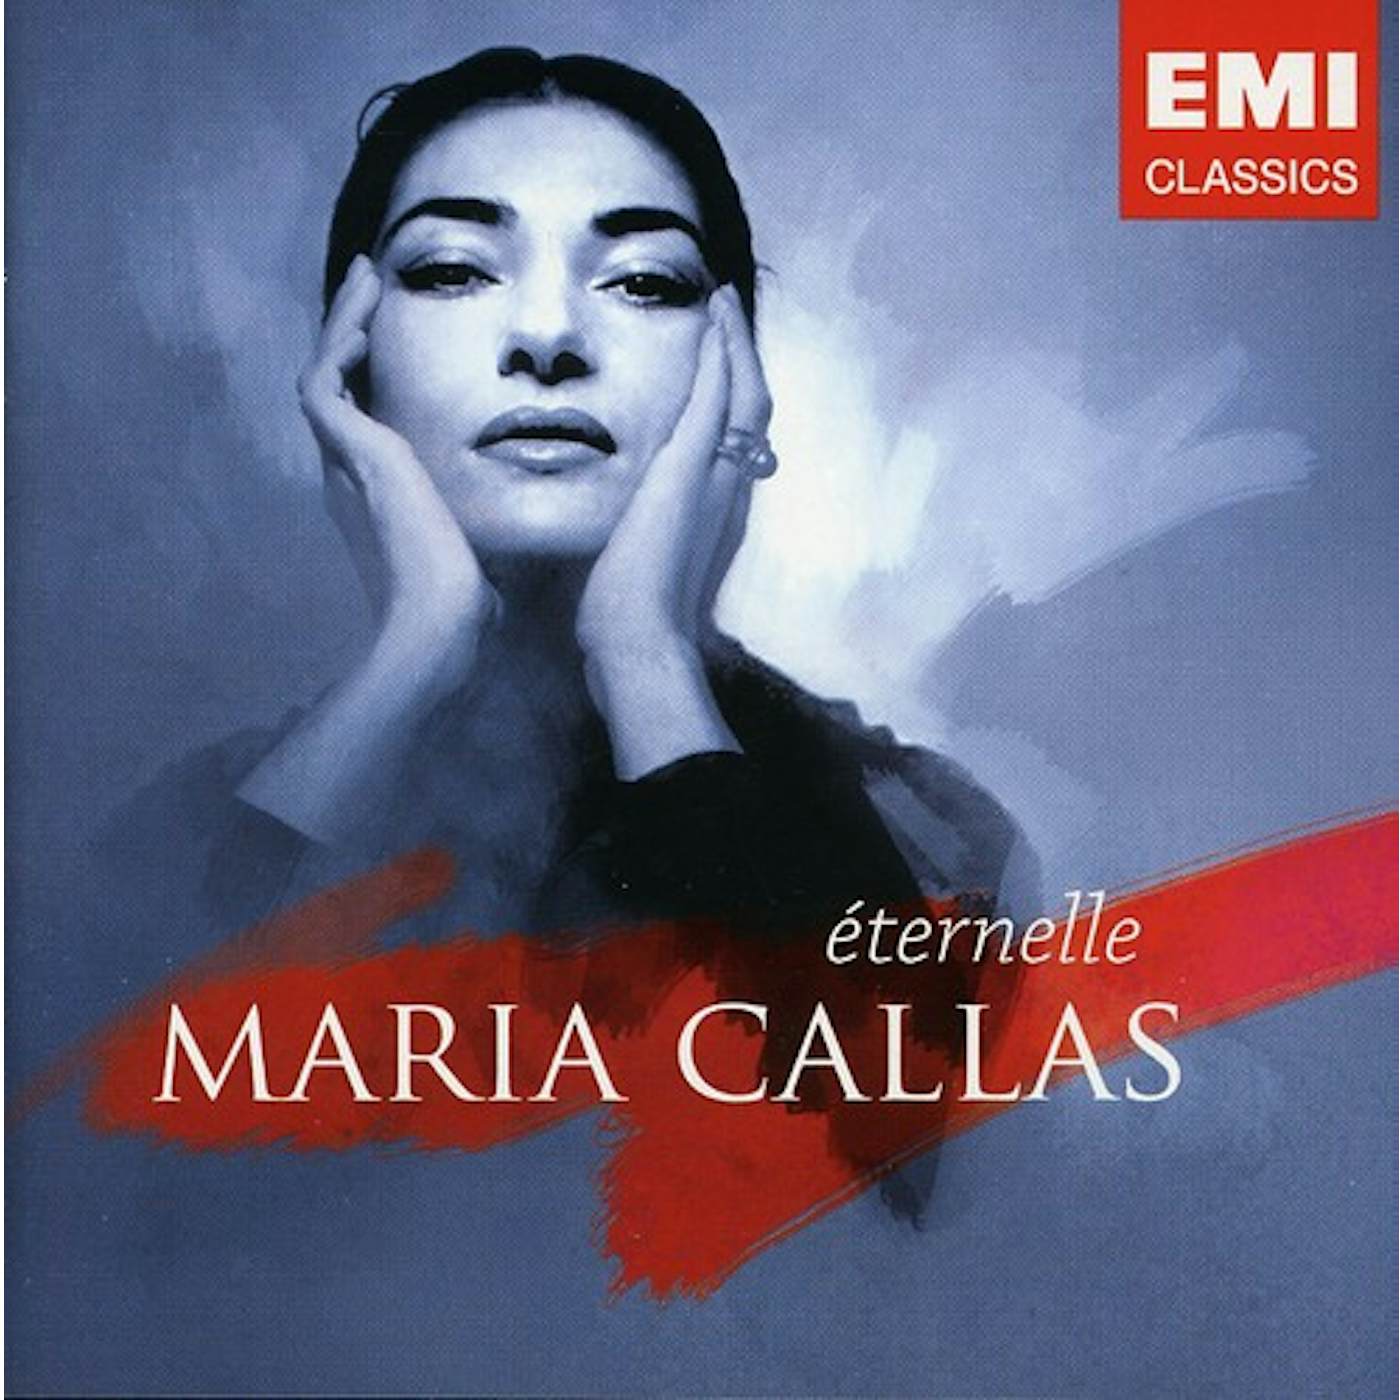 BEST OF MARIA CALLAS CD